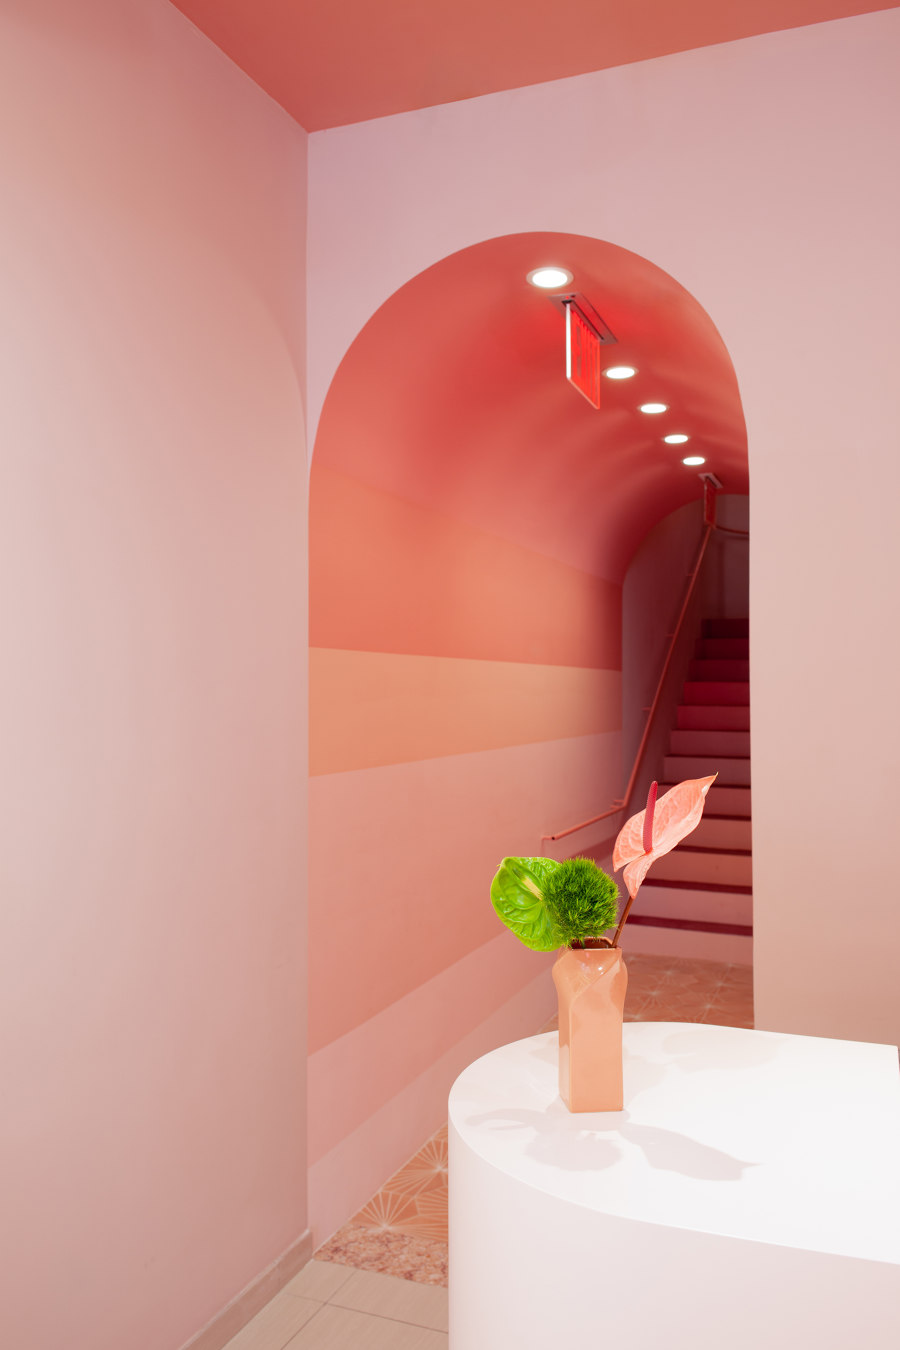 Glam Seamless in Soho von Sergio Mannino Studio | Shop-Interieurs